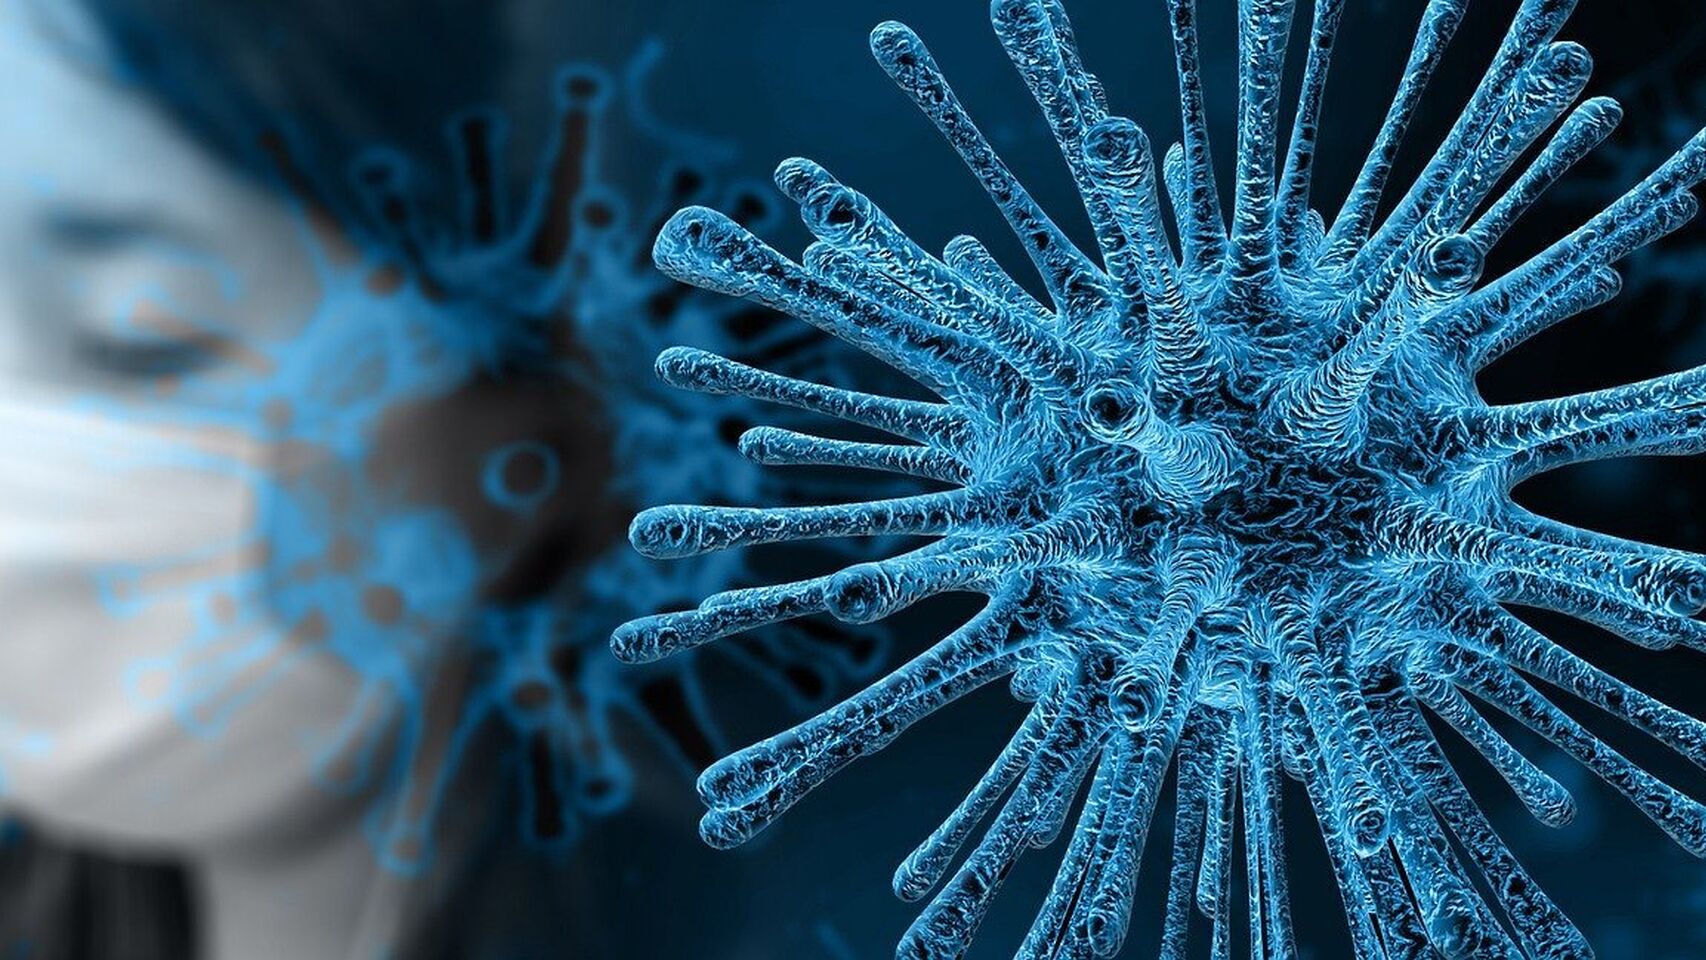 Fármaco antiparasitario que se vende en todo el mundo podría eliminar al coronavirus en 48 horas